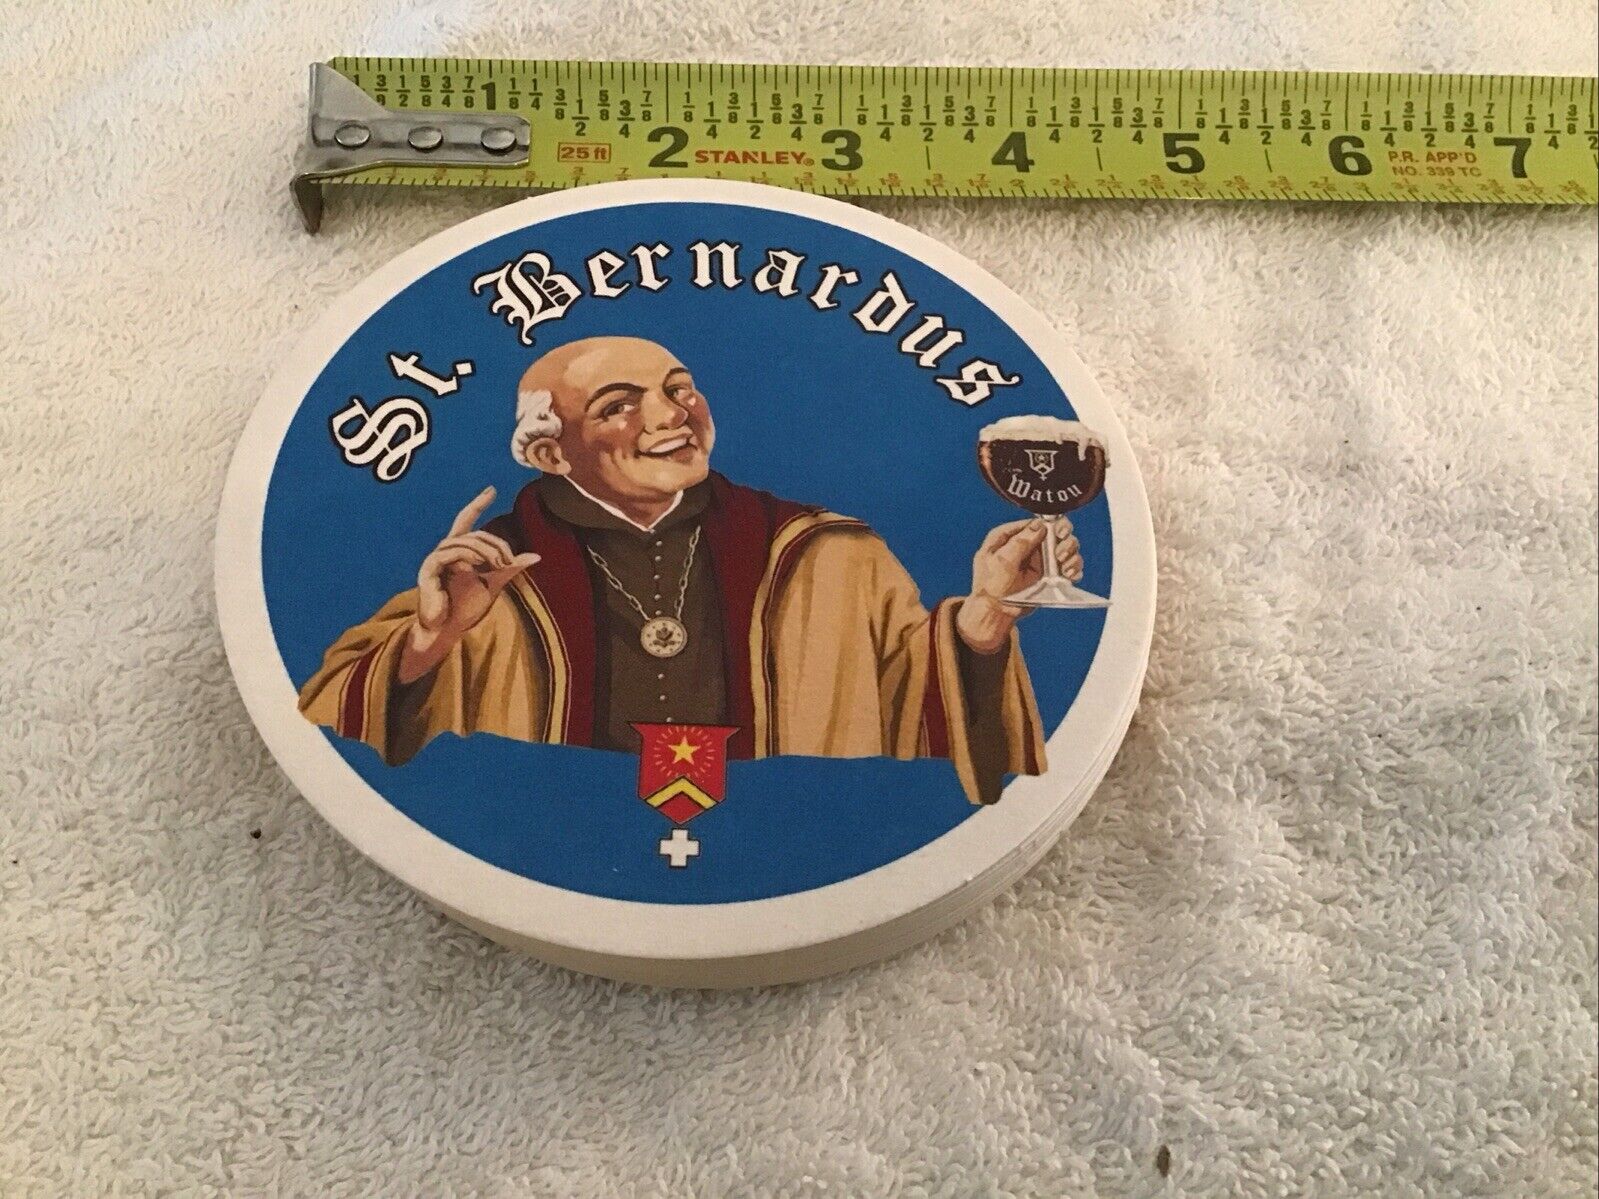 St. Bernardus Beer Coasters Set Of 10